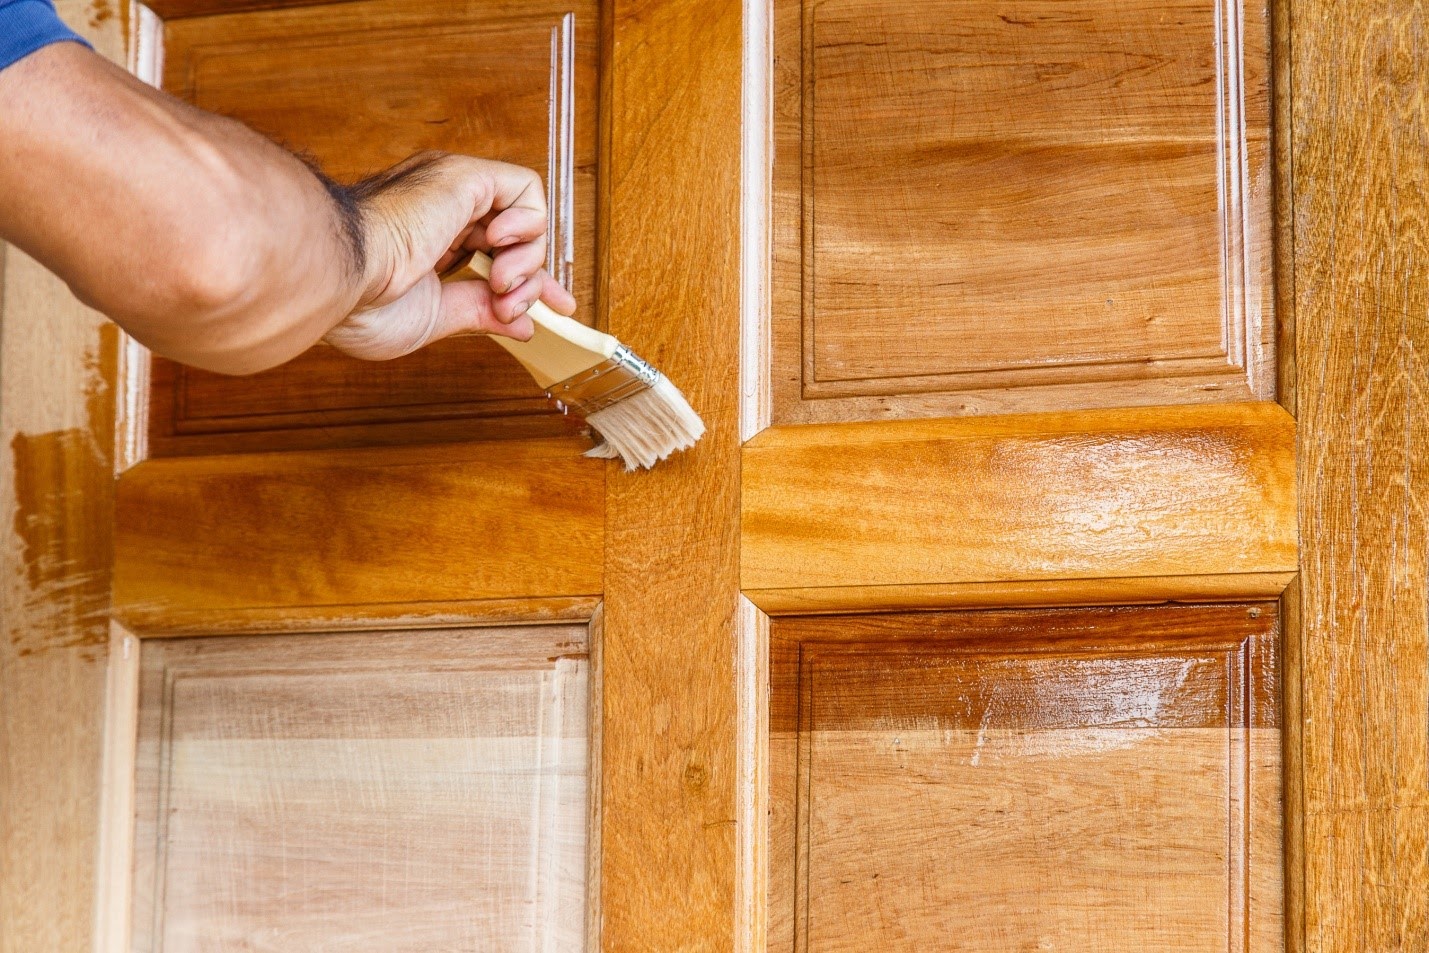 Возможно ли выполнить ремонт межкомнатной двери своими руками?